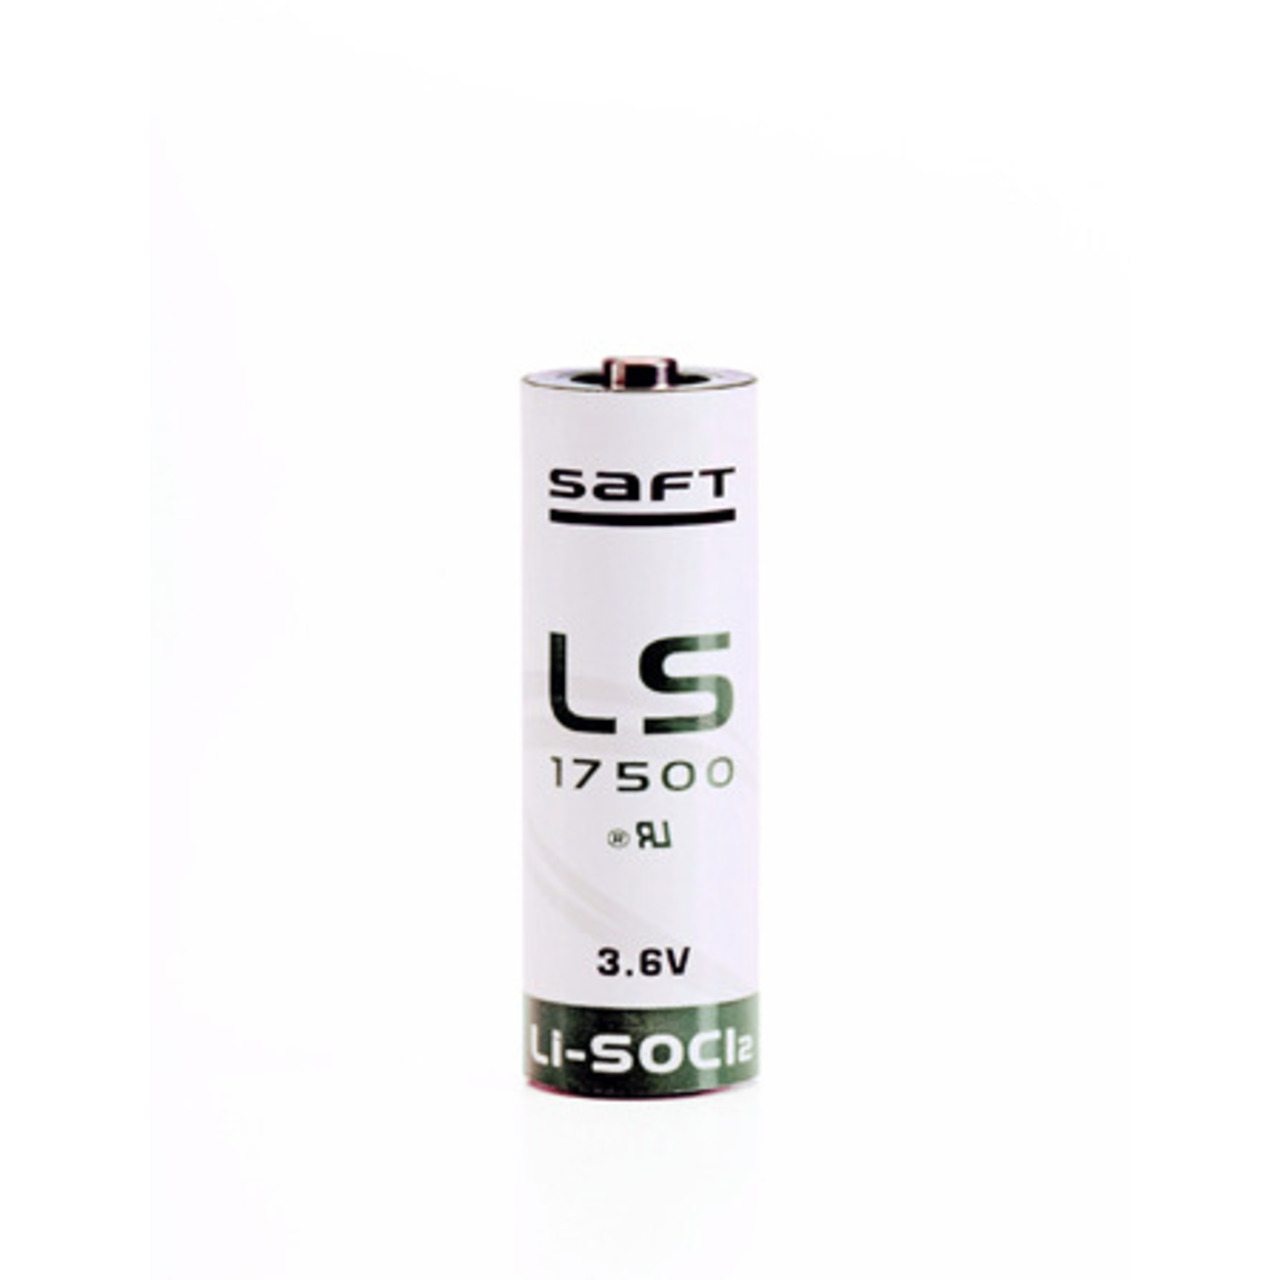 Saft Lithium Batterie LS-17500- Typ A- 3-6 V- 3600 mAh unter Stromversorgung